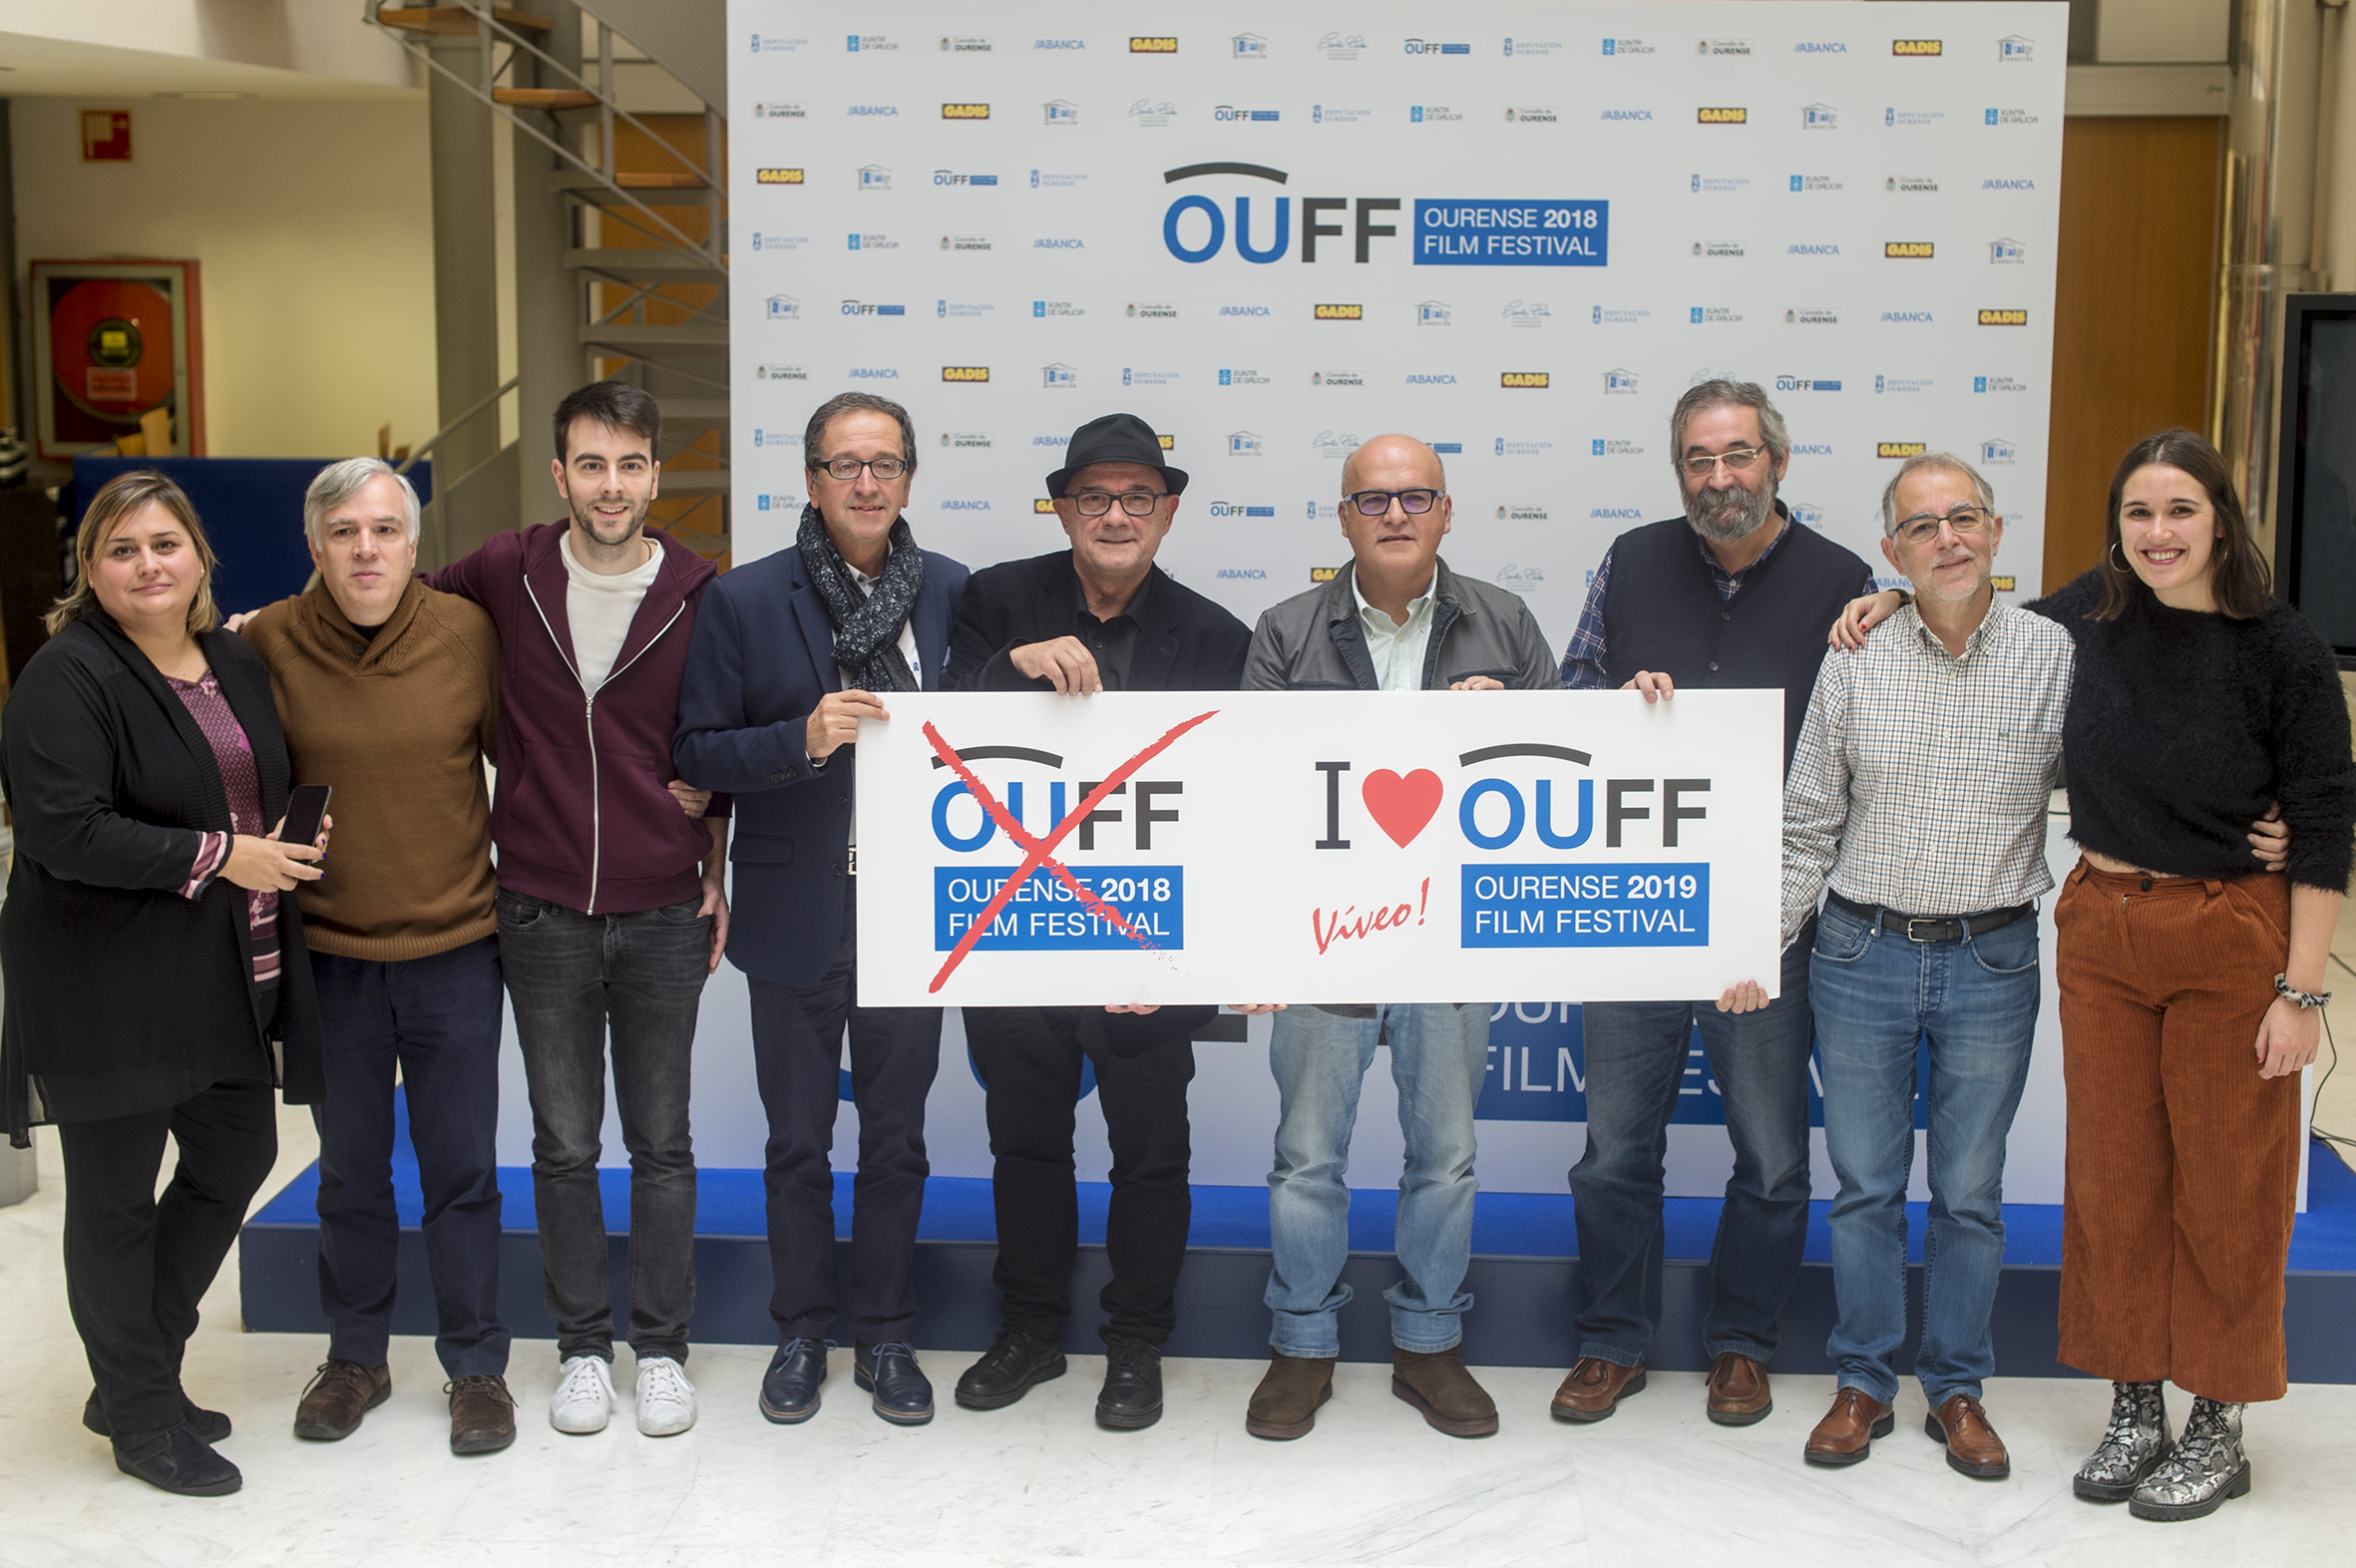 OUFF Ourense Film Festival